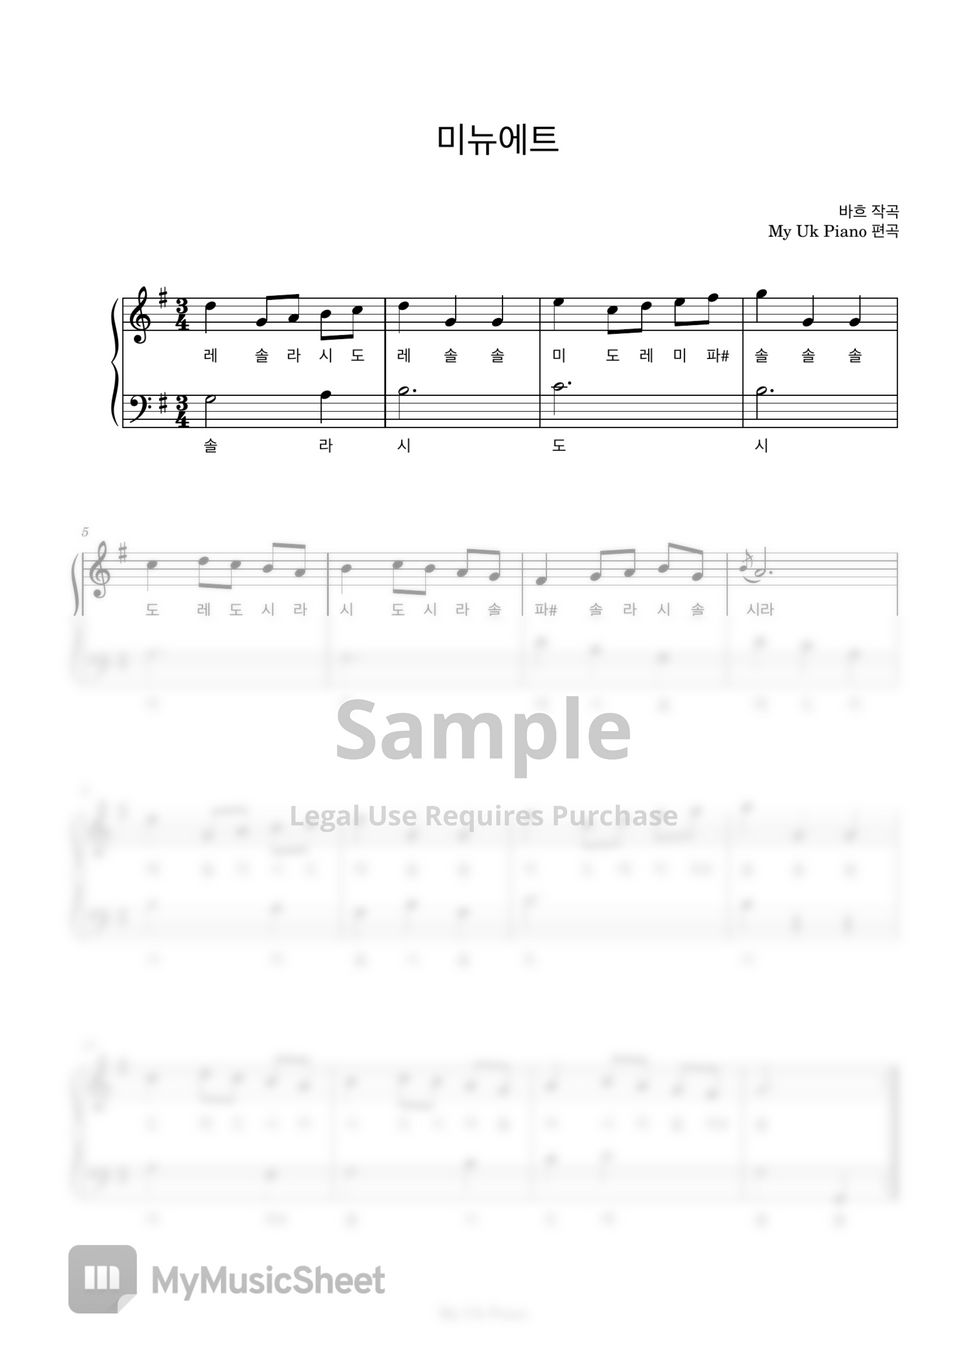 바흐 - 바흐 '미뉴에트' (Bach 'Minuet') (쉬운계이름악보) by My Uk Piano